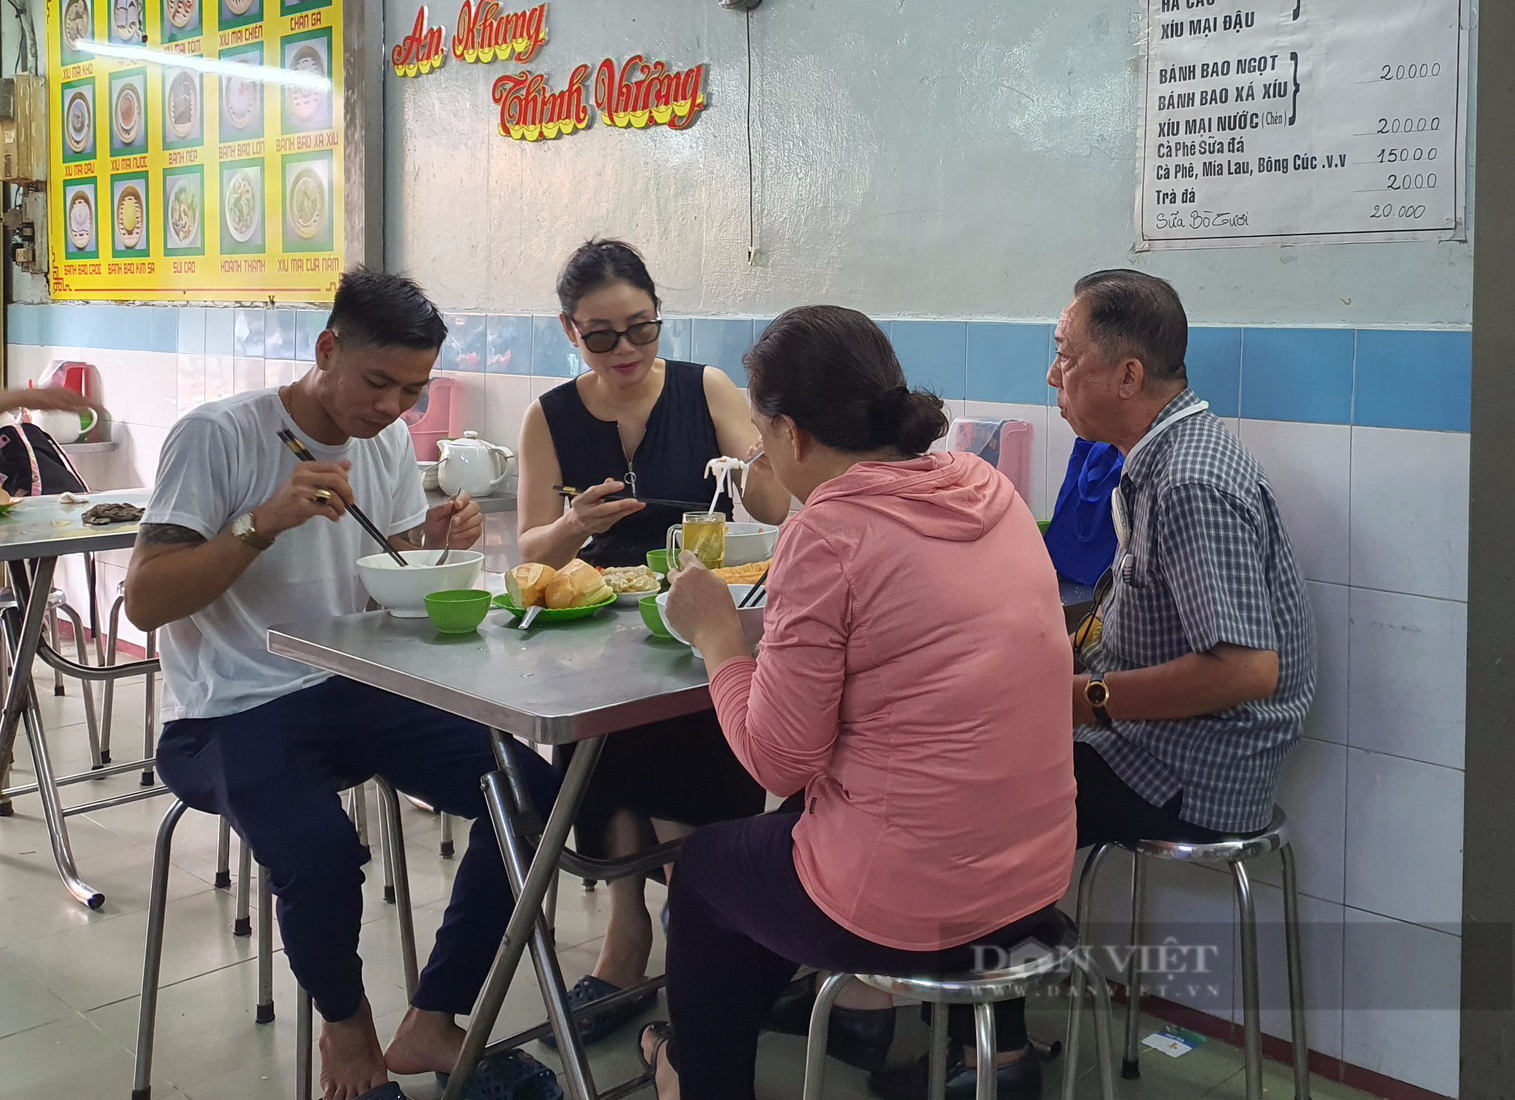 Sài Gòn quán: Quán ăn chính gốc người Hoa ở quận 3, khách hết hồn vì cả chục món dimsum bày trên bàn - Ảnh 2.